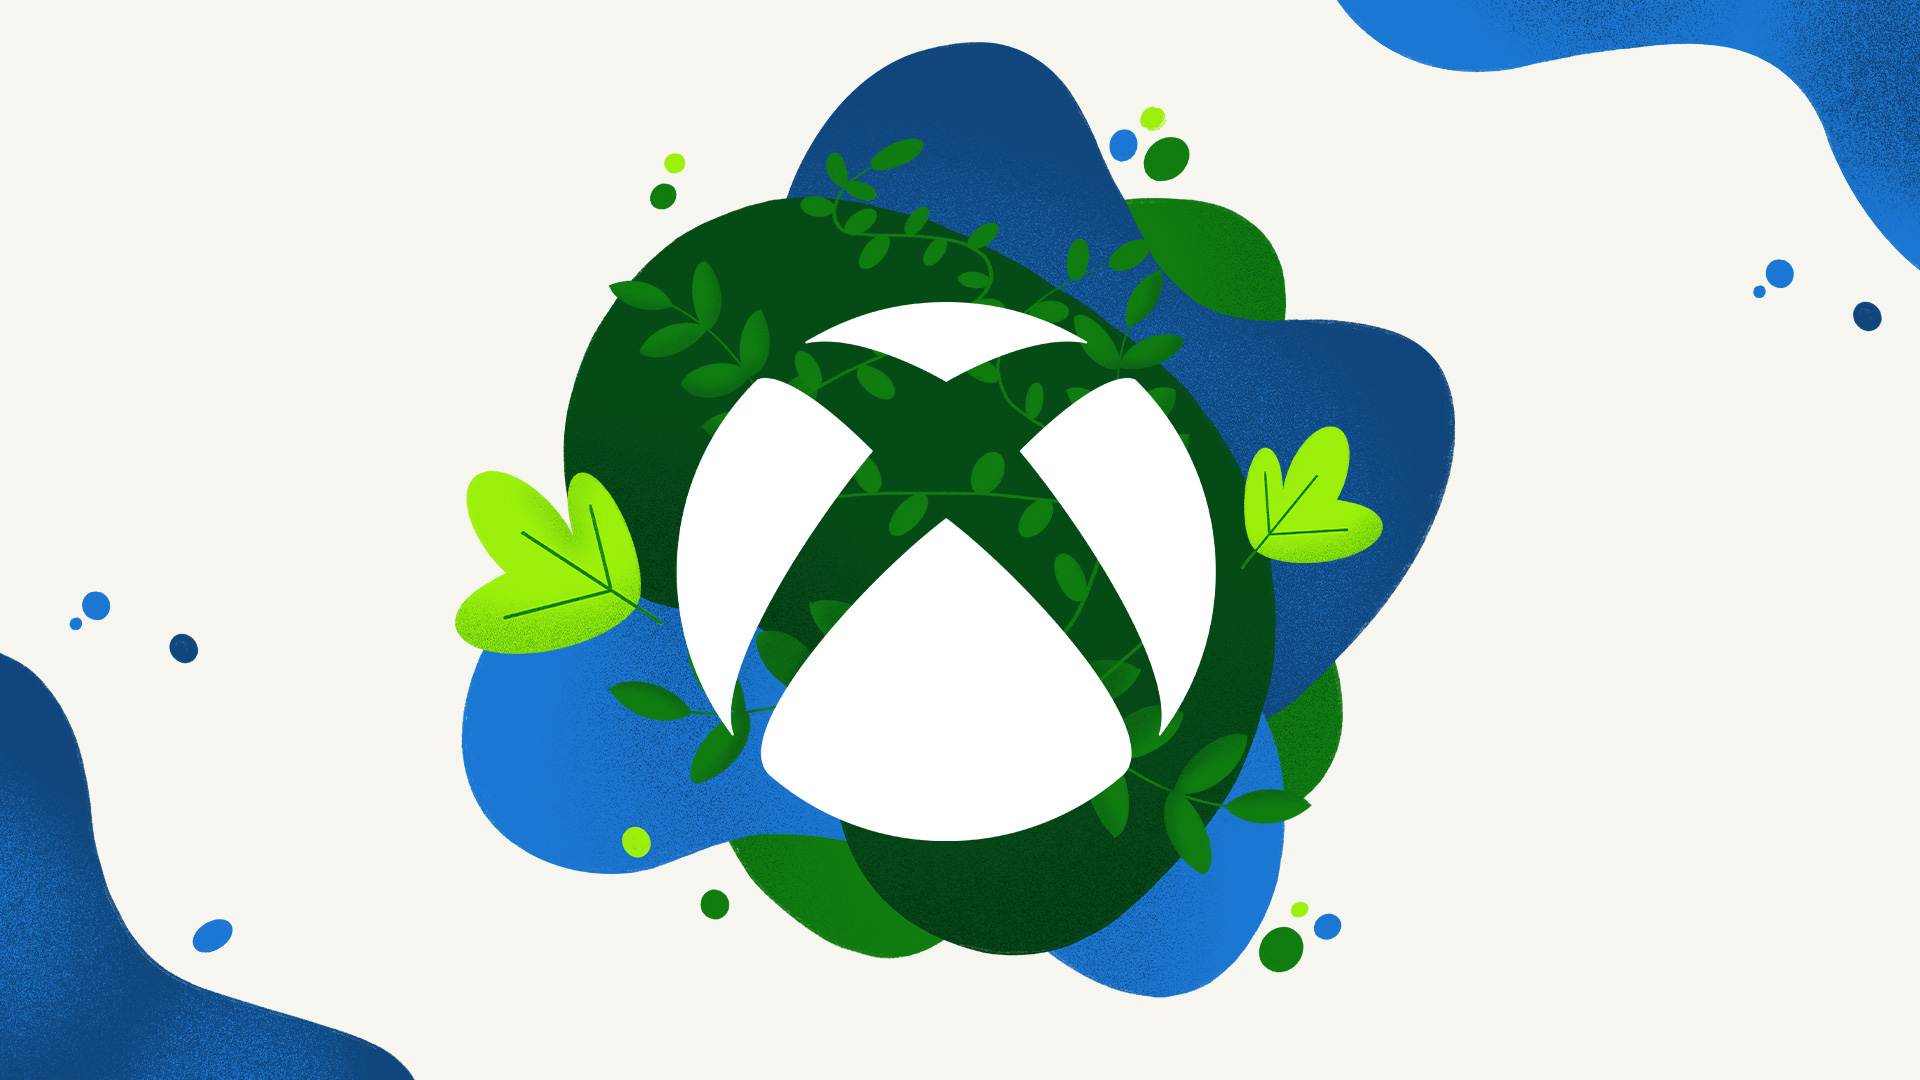 "Kun kaikki vähentävät päästöjä, kaikki planeetalla voittaa" - Selittää Xboxin uusia pelikehityksen kestävyystyökaluja